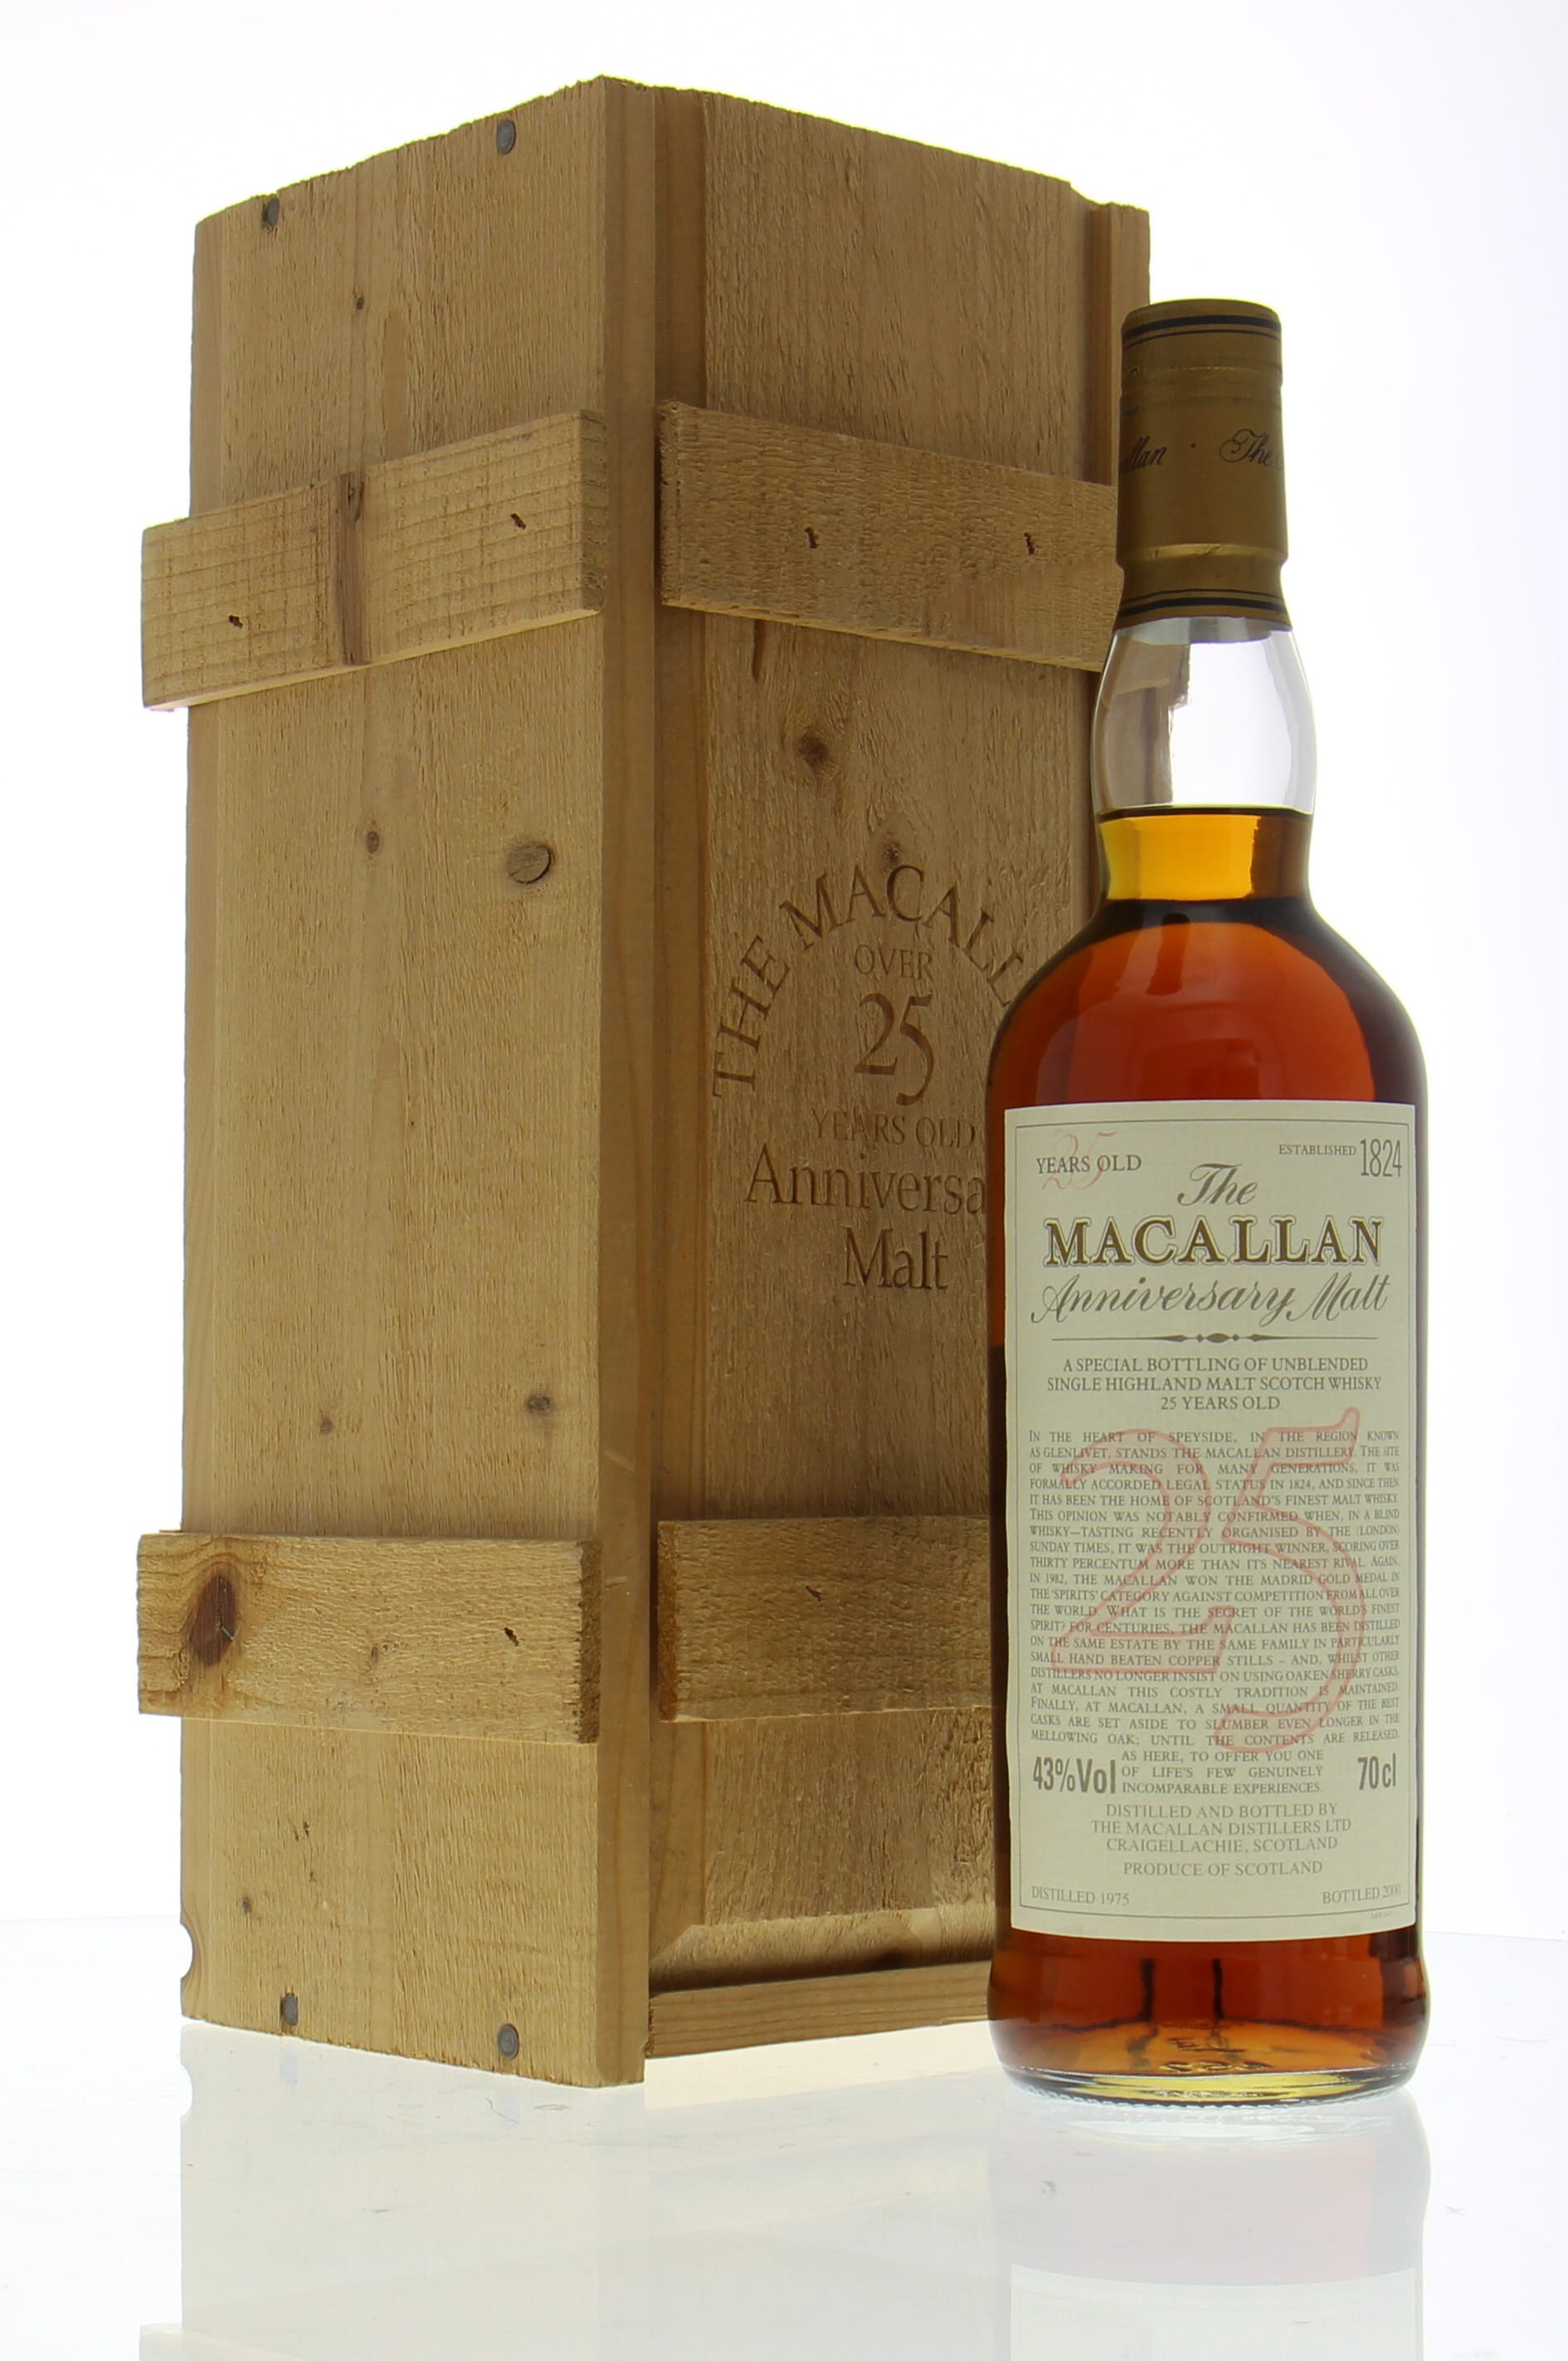 Macallan - 25 years old Anniversary Malt 1975 43% 1975 In Original Wooden Case